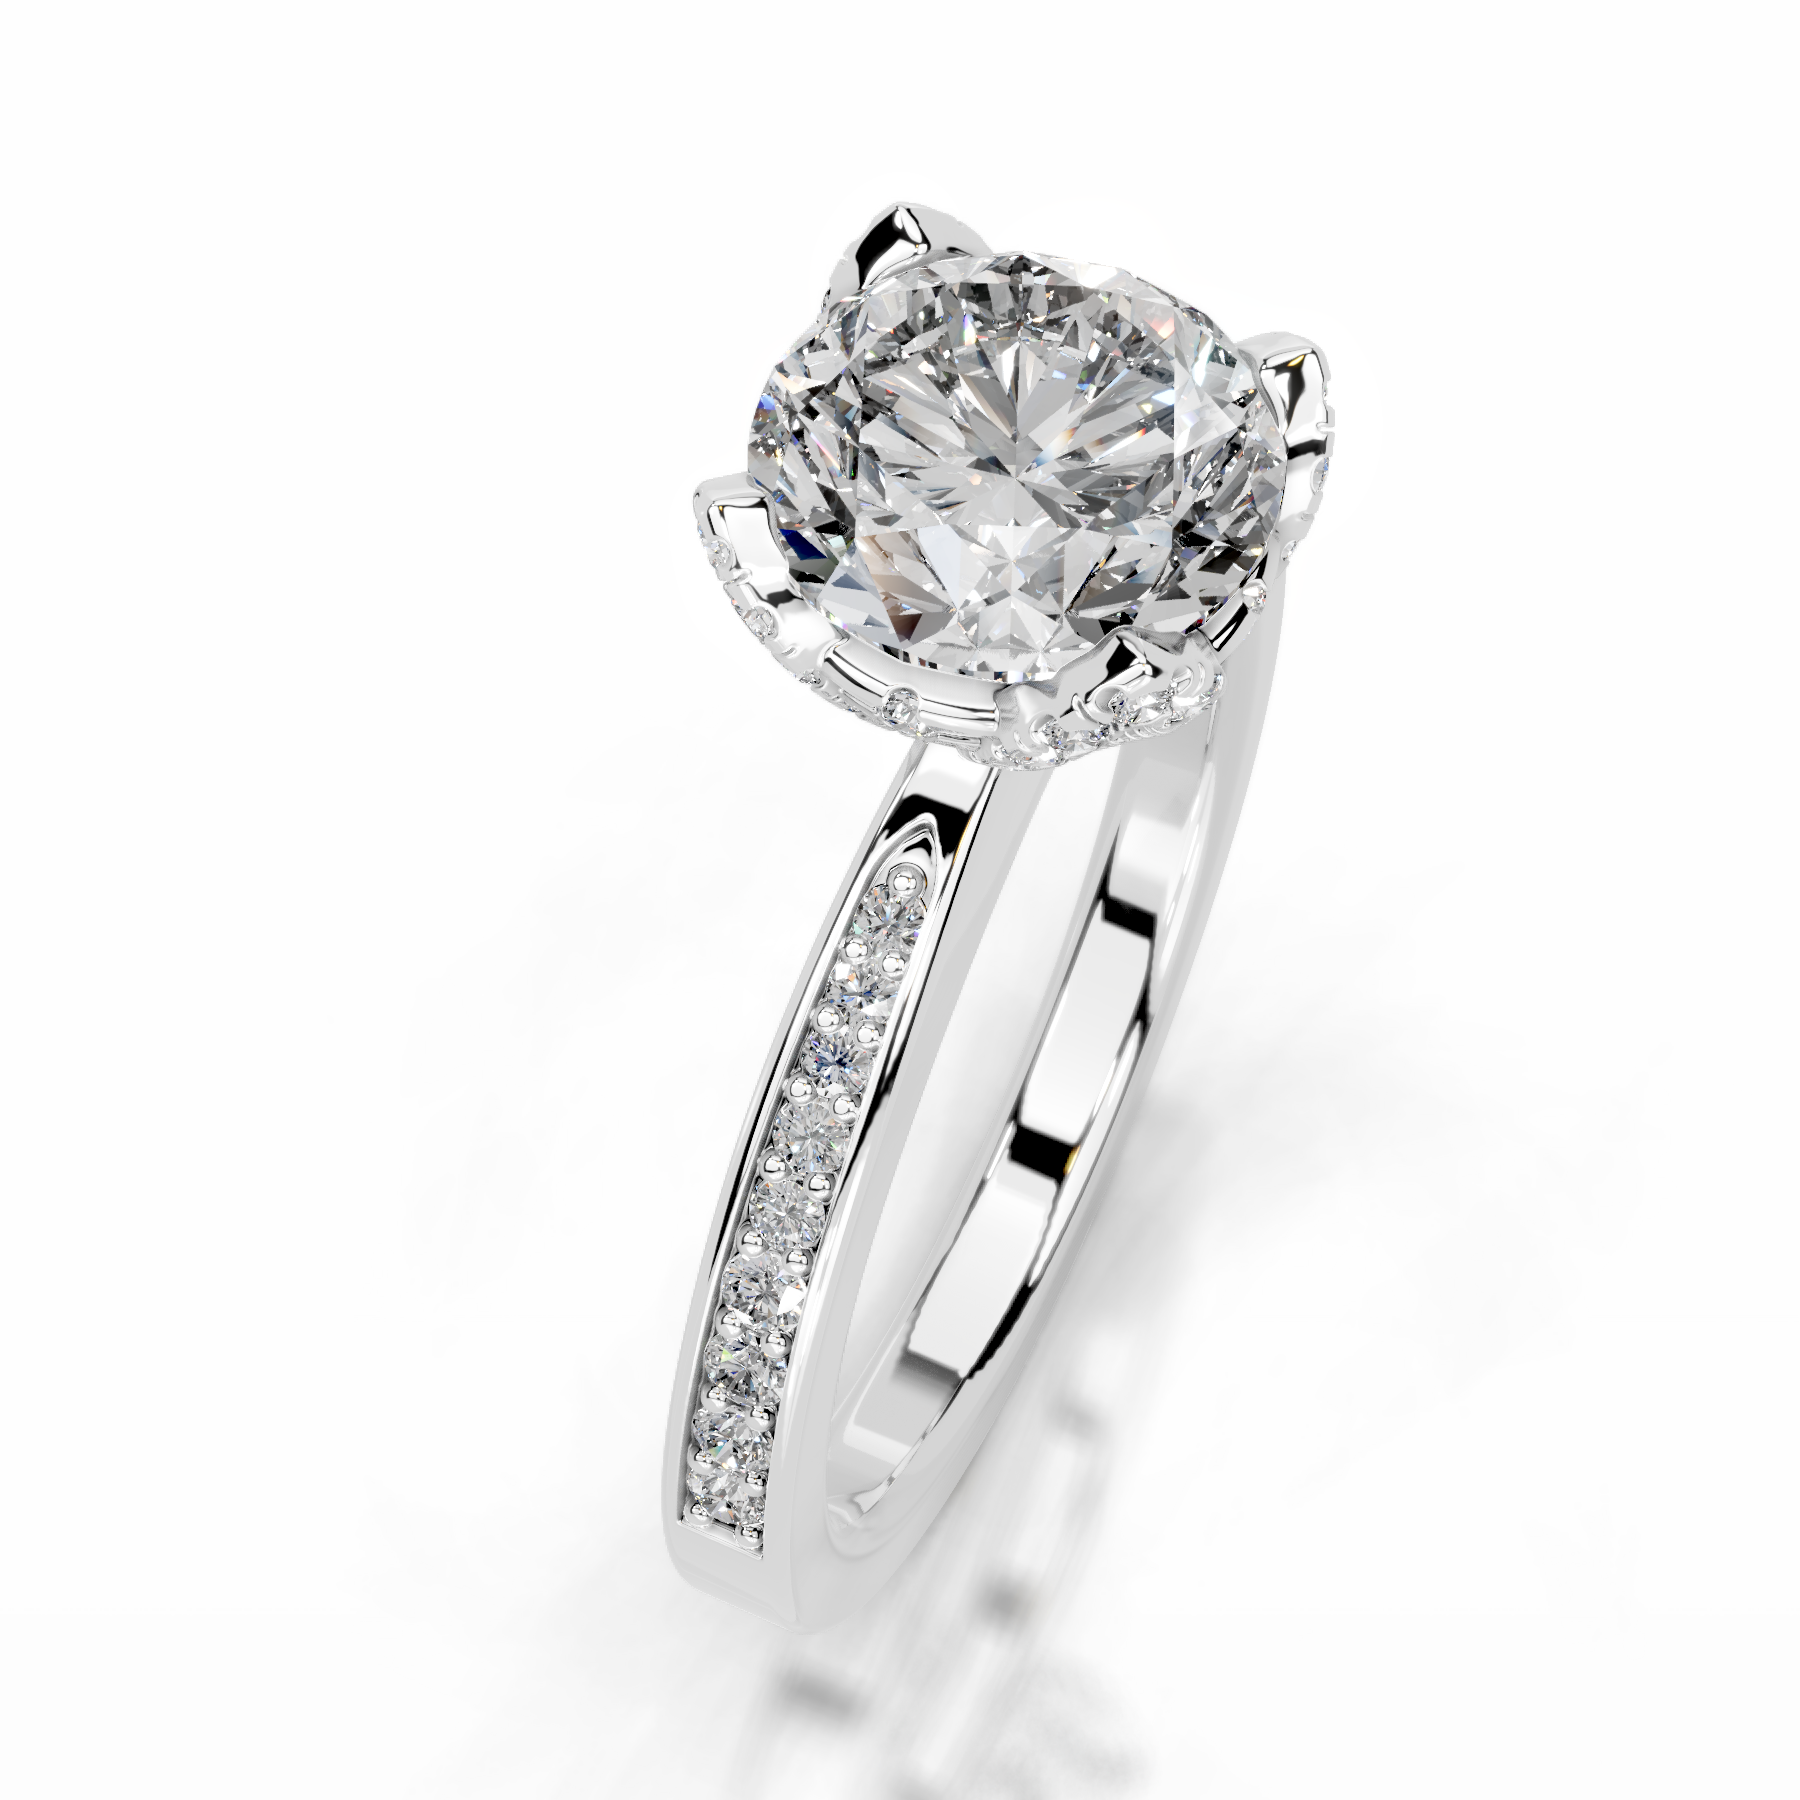 Daria Diamond Engagement Ring   (1.85 Carat) -Platinum